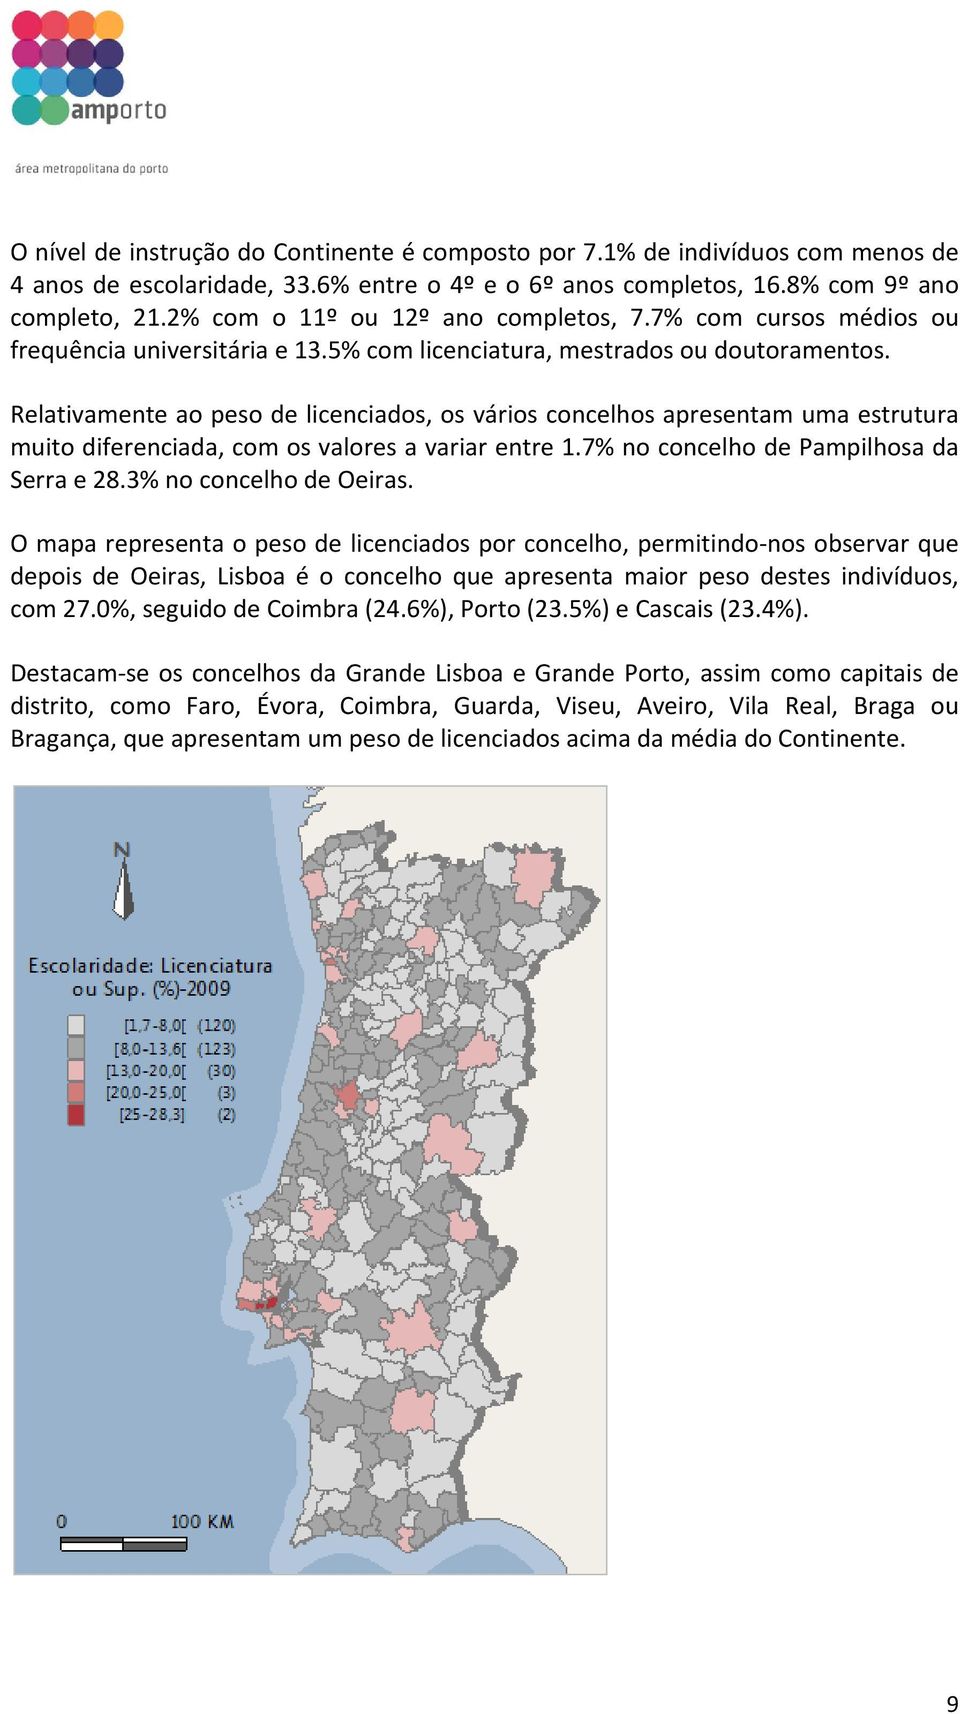 Relativamente ao peso de licenciados, os vários concelhos apresentam uma estrutura muito diferenciada, com os valores a variar entre 1.7% no concelho de Pampilhosa da Serra e 28.